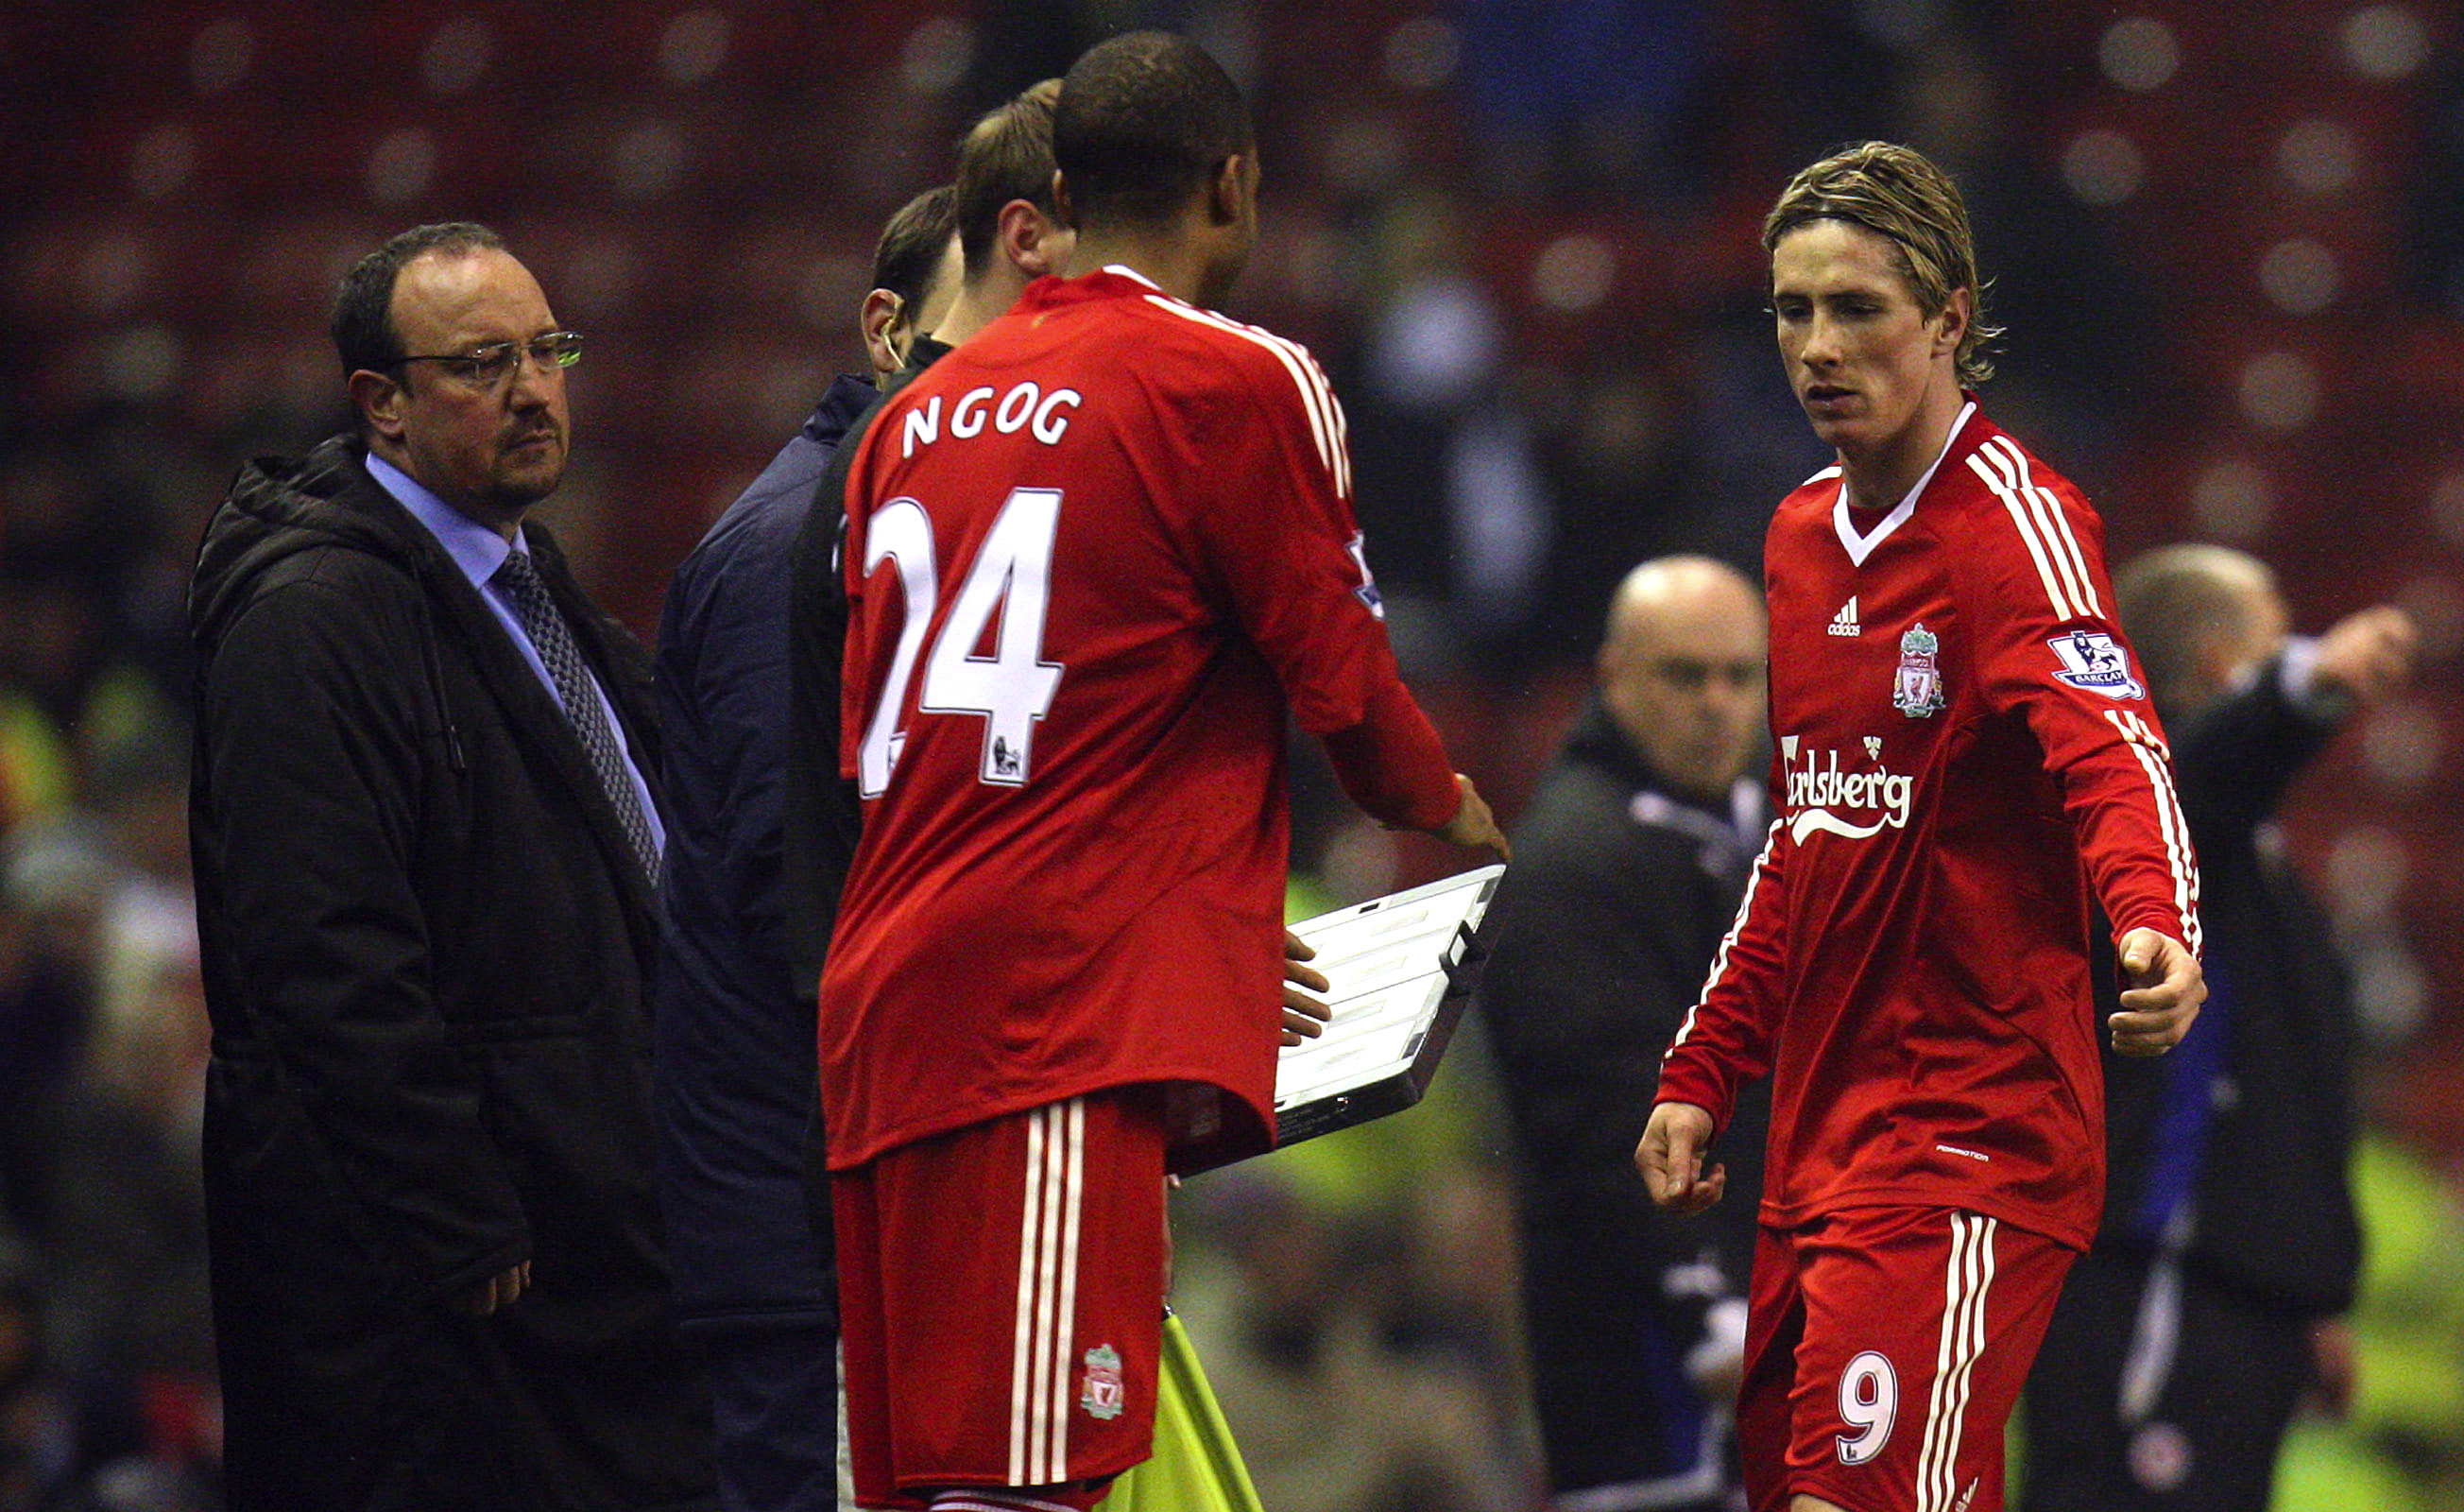 Fernando Torres tog sig i baksidan och gick av i början av matchen. 